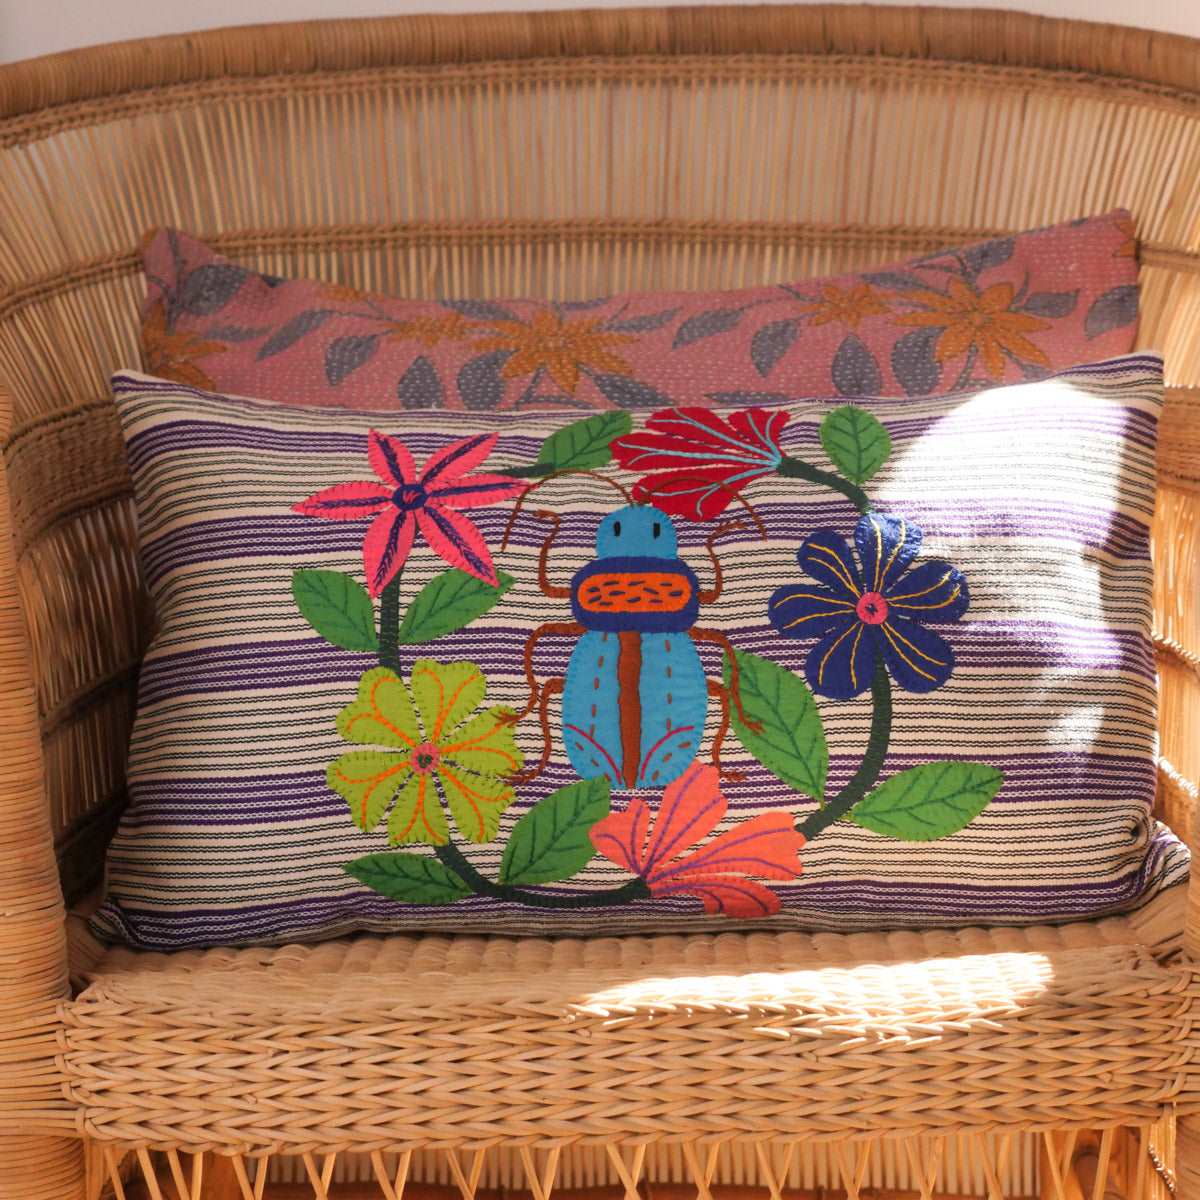 Aqua Beetle cushion, embroidery on handloomed cloth